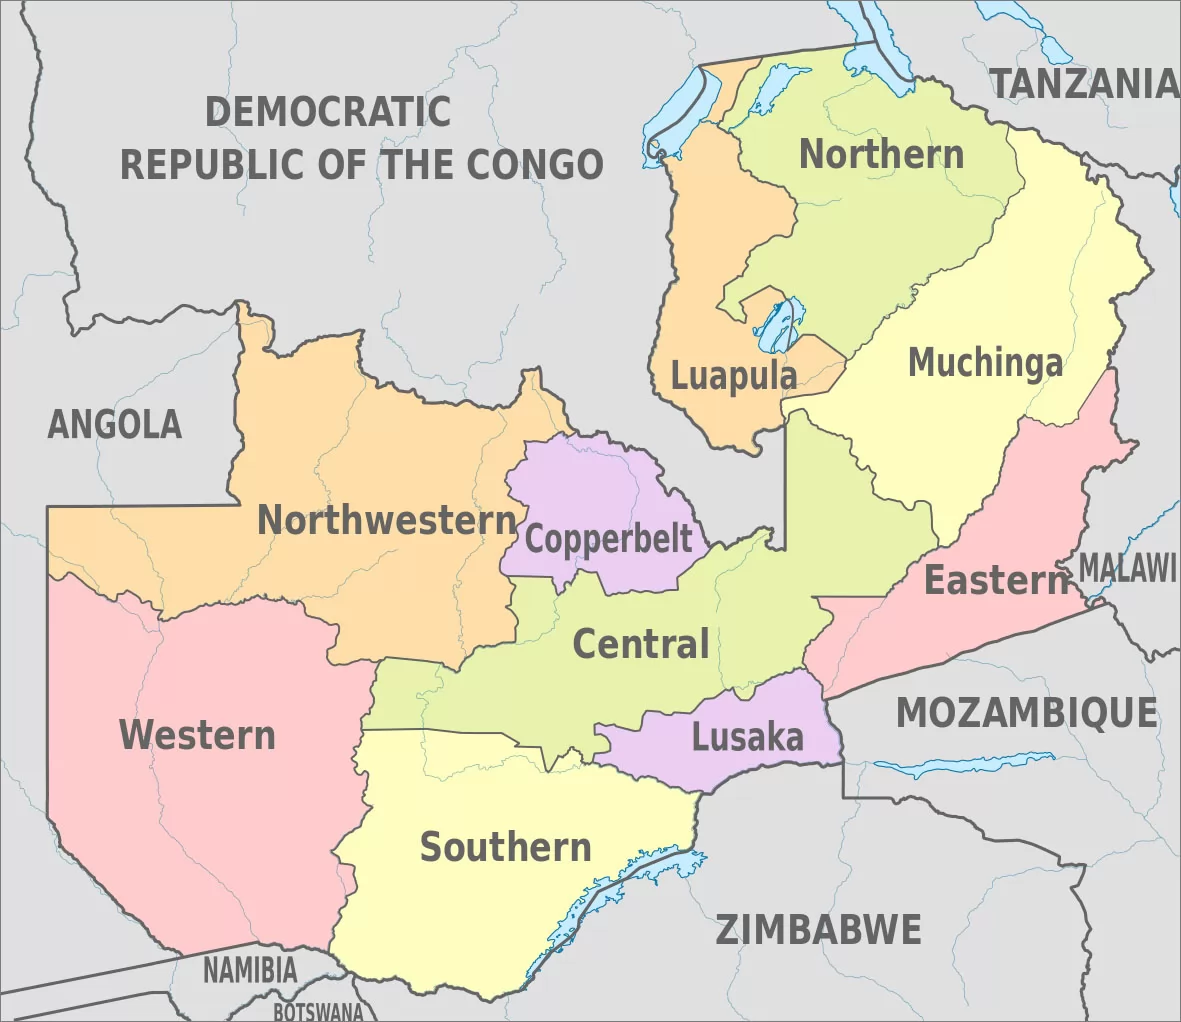 赞比亚地图|华译网翻译公司提供专业翻译服务